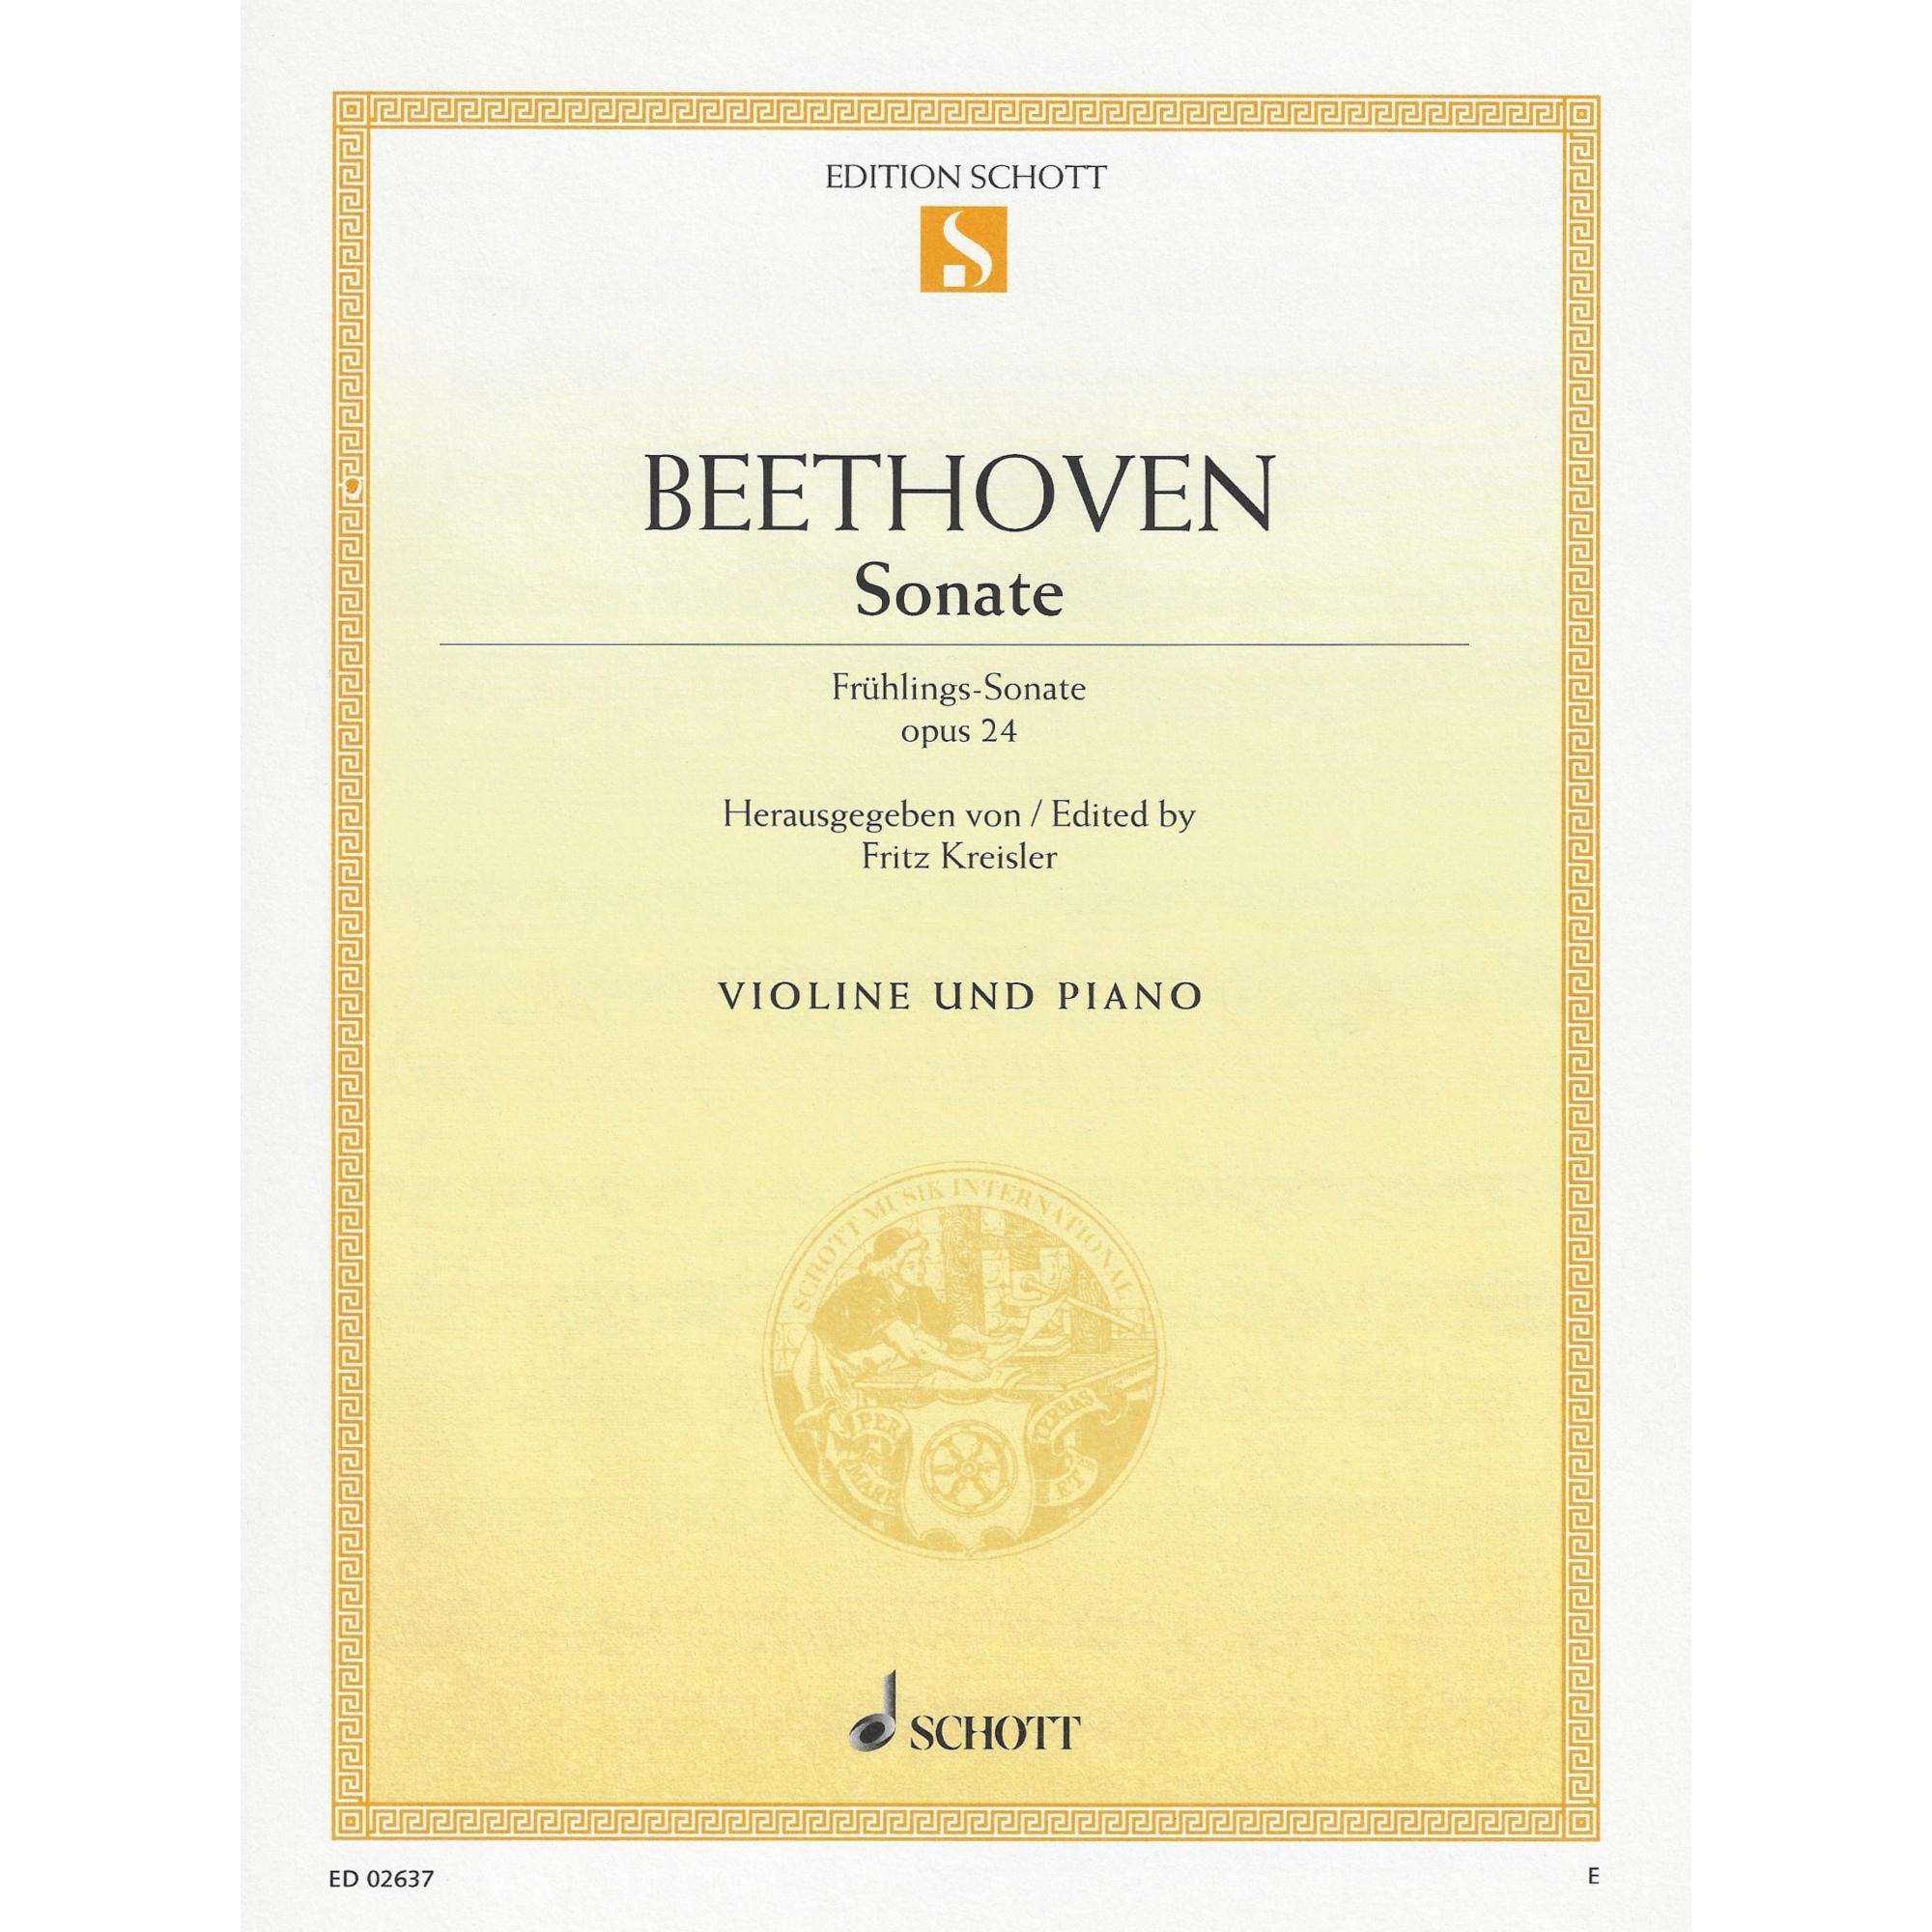 Beethoven -- Sonata, Op. 24 (Spring Sonata) for Violin and Piano